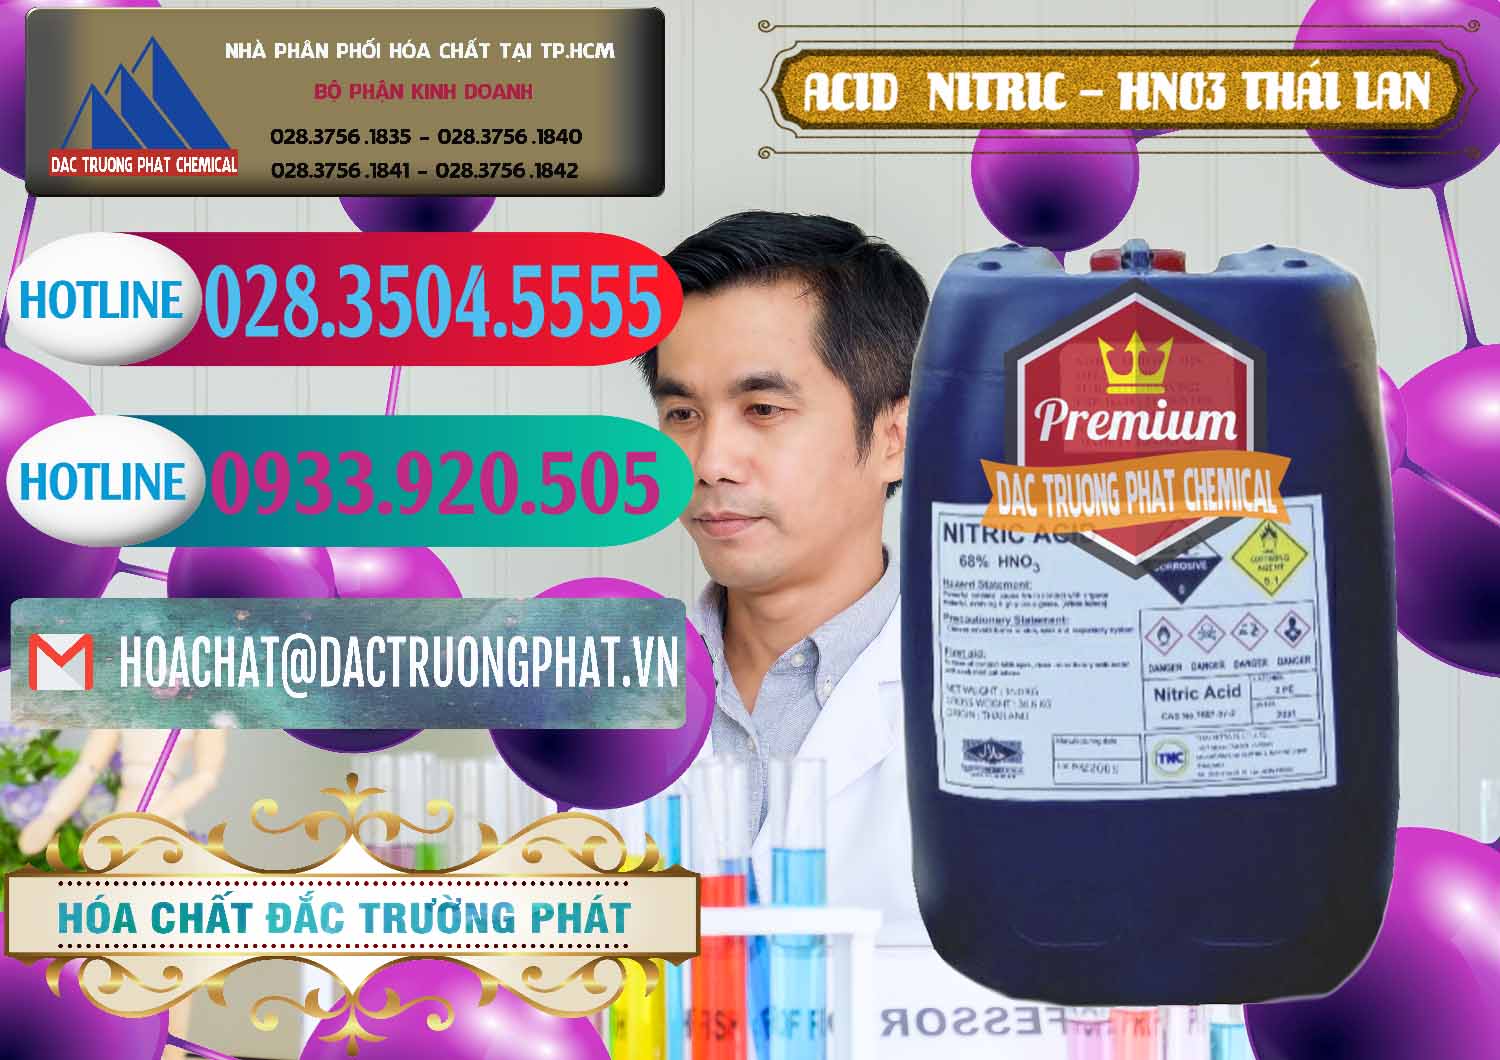 Cty chuyên bán _ phân phối Acid Nitric – Axit Nitric HNO3 Thái Lan Thailand - 0344 - Bán _ phân phối hóa chất tại TP.HCM - truongphat.vn